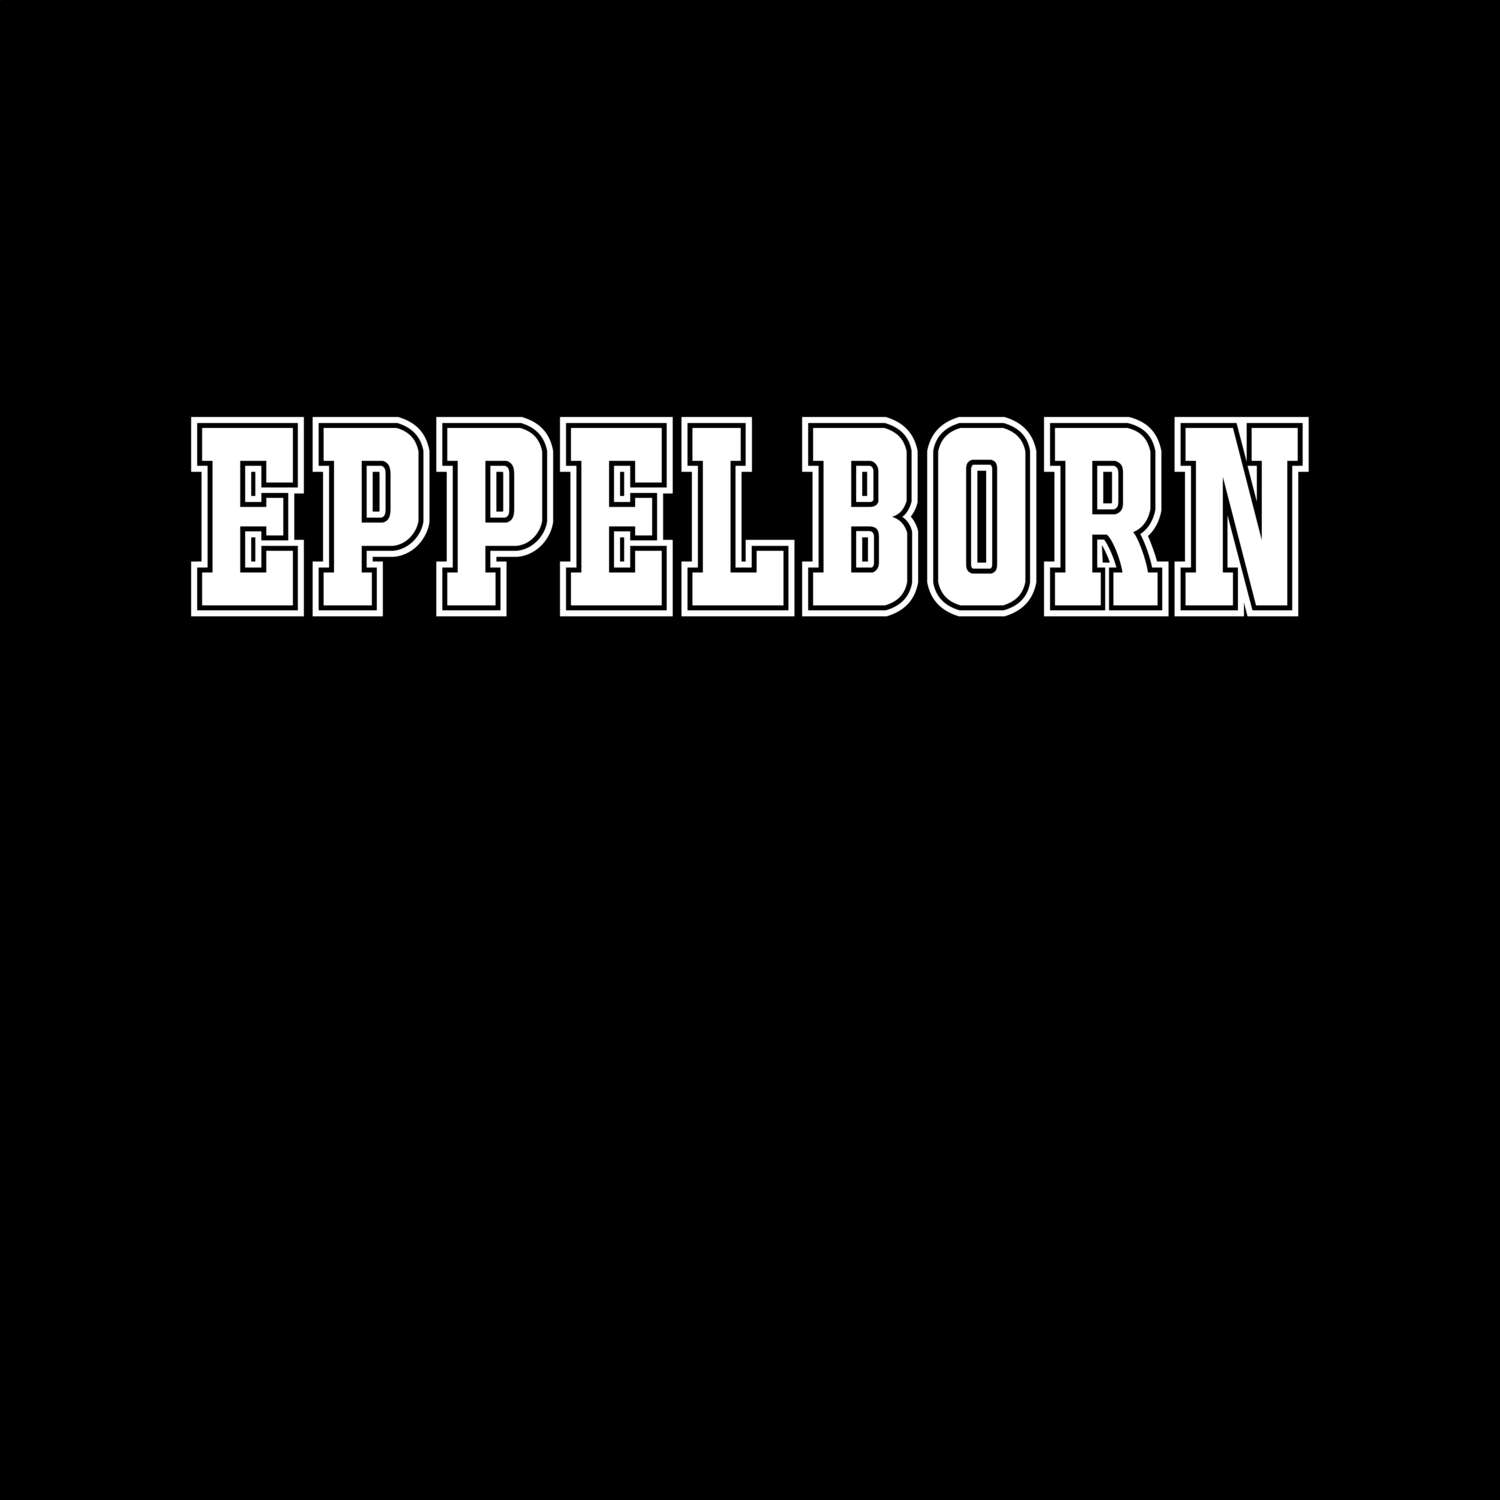 Eppelborn T-Shirt »Classic«